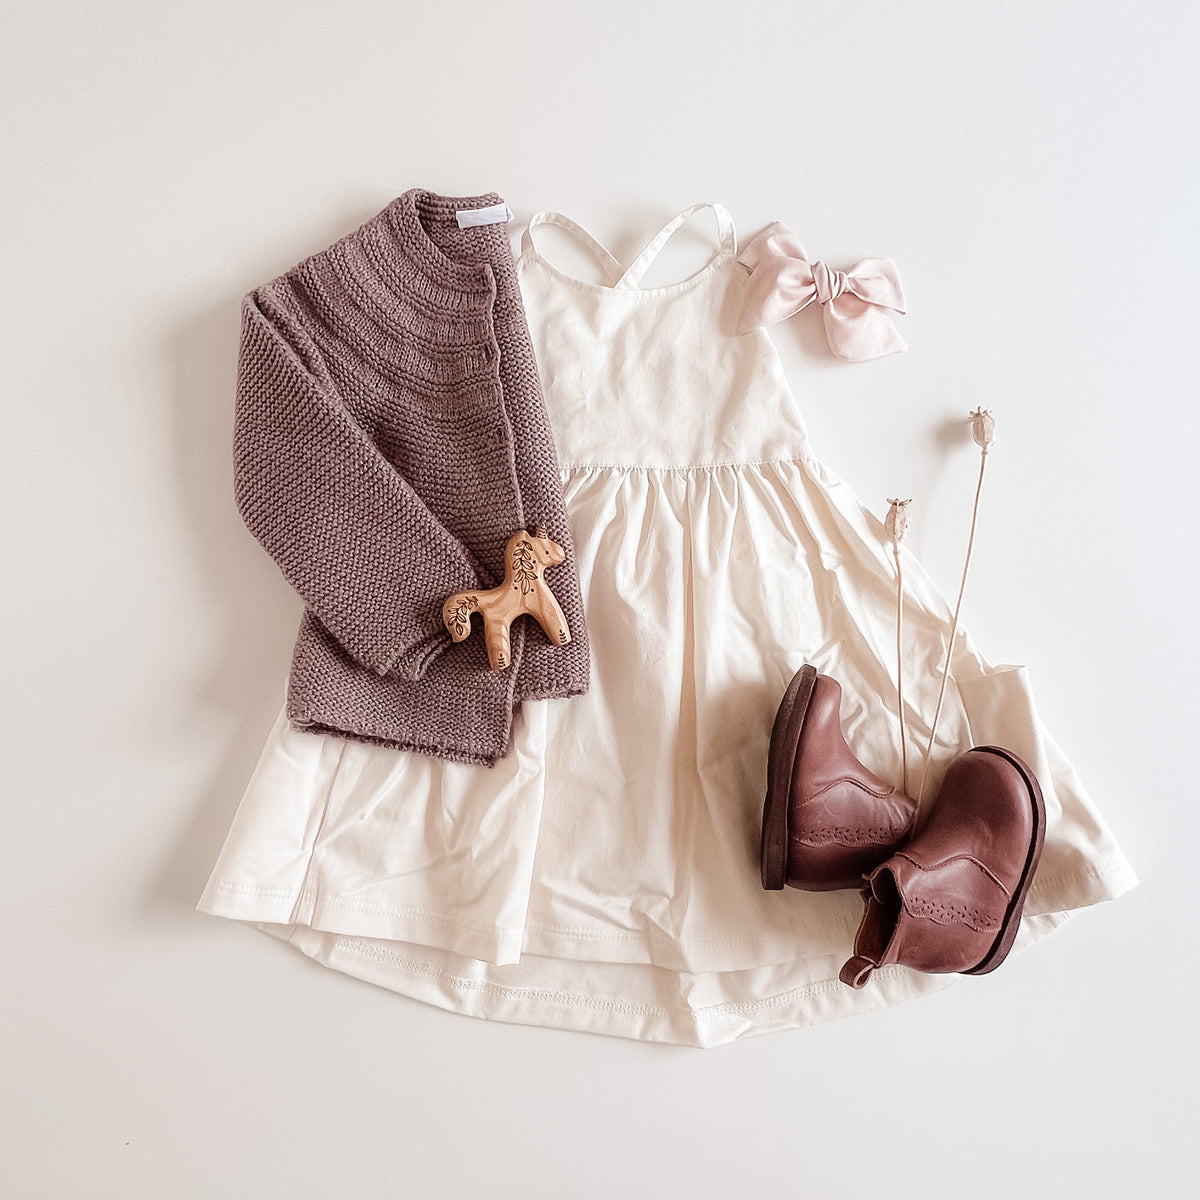 Freya Dress with Market Pockets in 'Vanilla Bean' - Ready To Ship